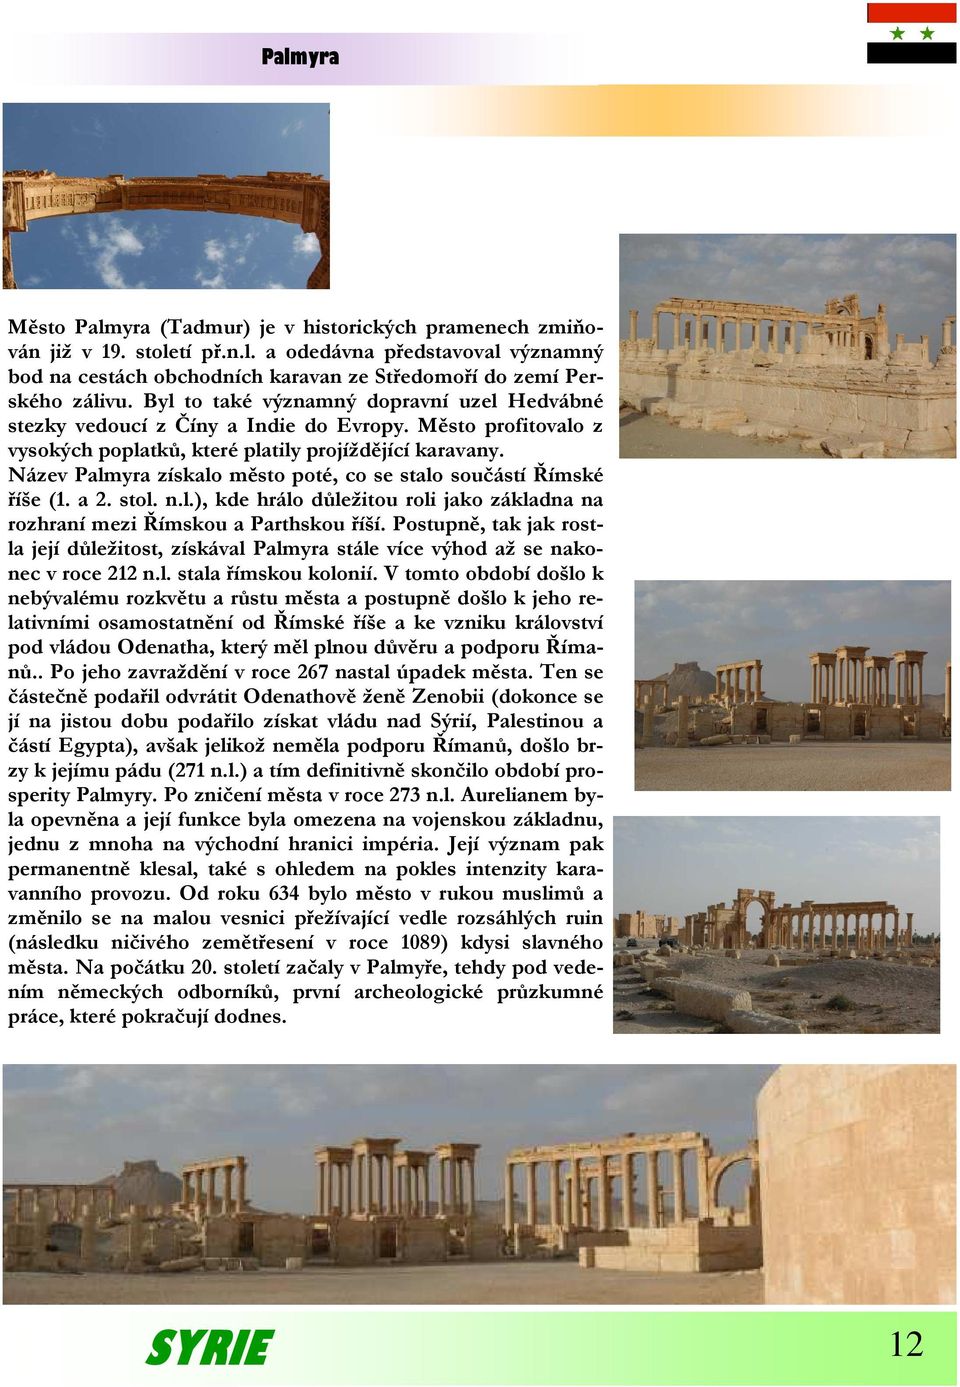 Název Palmyra získalo město poté, co se stalo součástí Římské říše (1. a 2. stol. n.l.), kde hrálo důležitou roli jako základna na rozhraní mezi Římskou a Parthskou říší.